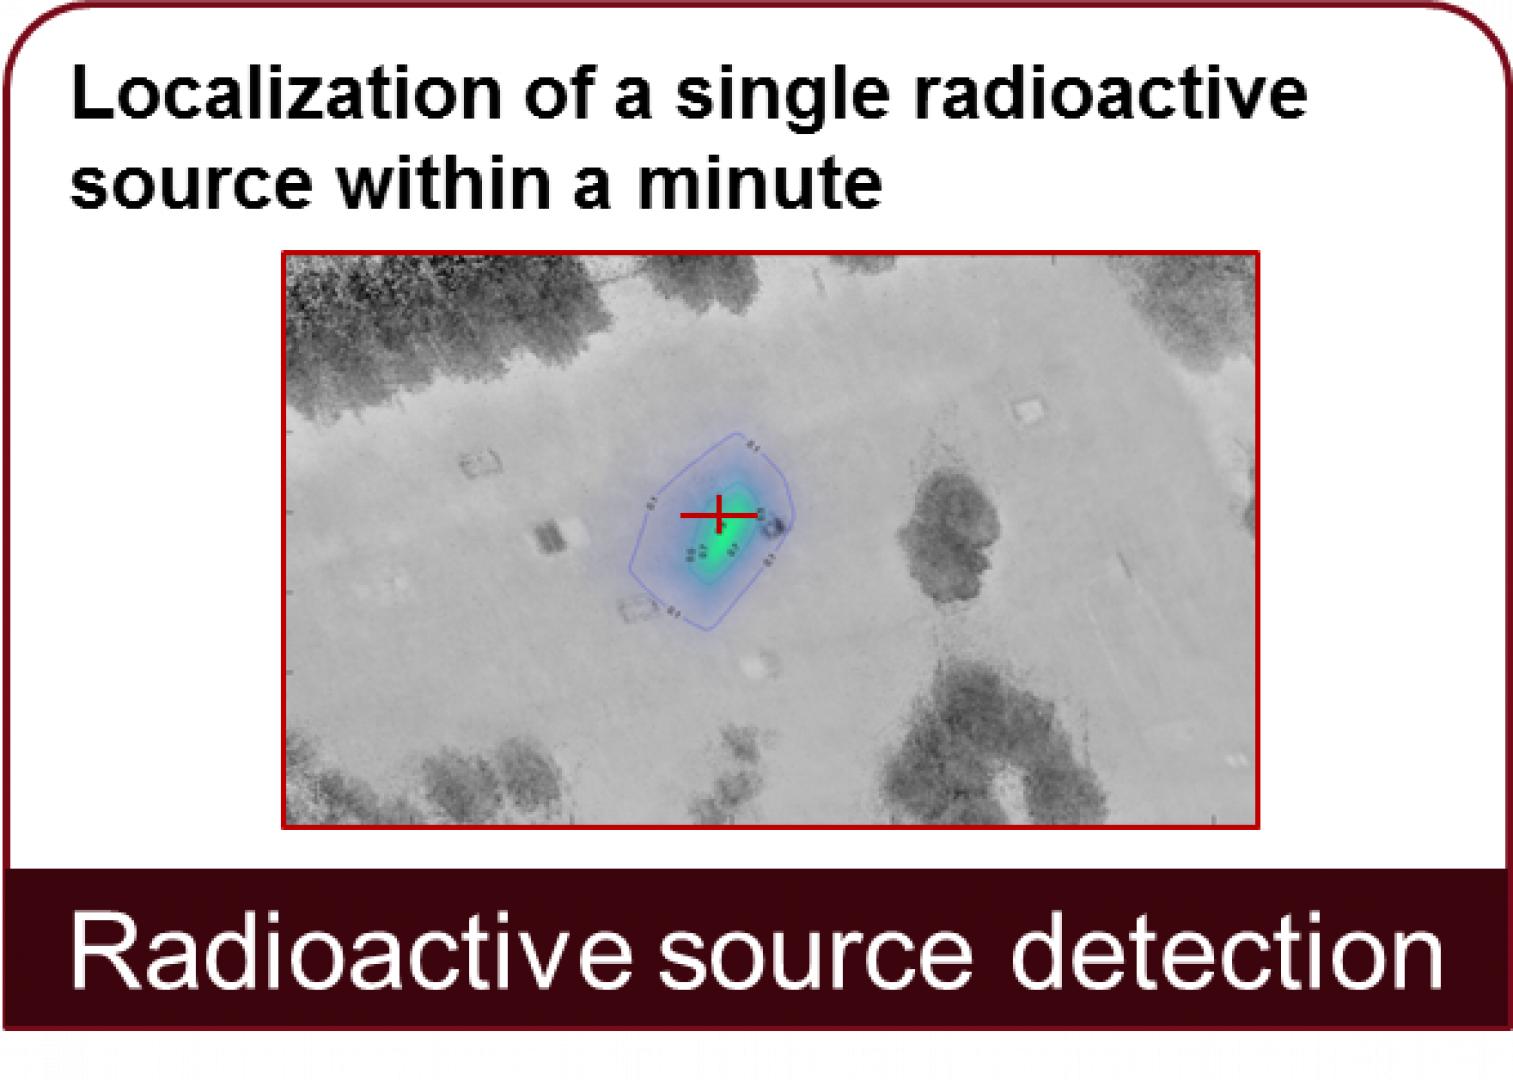 Detektering av radioaktiva källor: lokalisering av en radioaktiv källa inom en minut